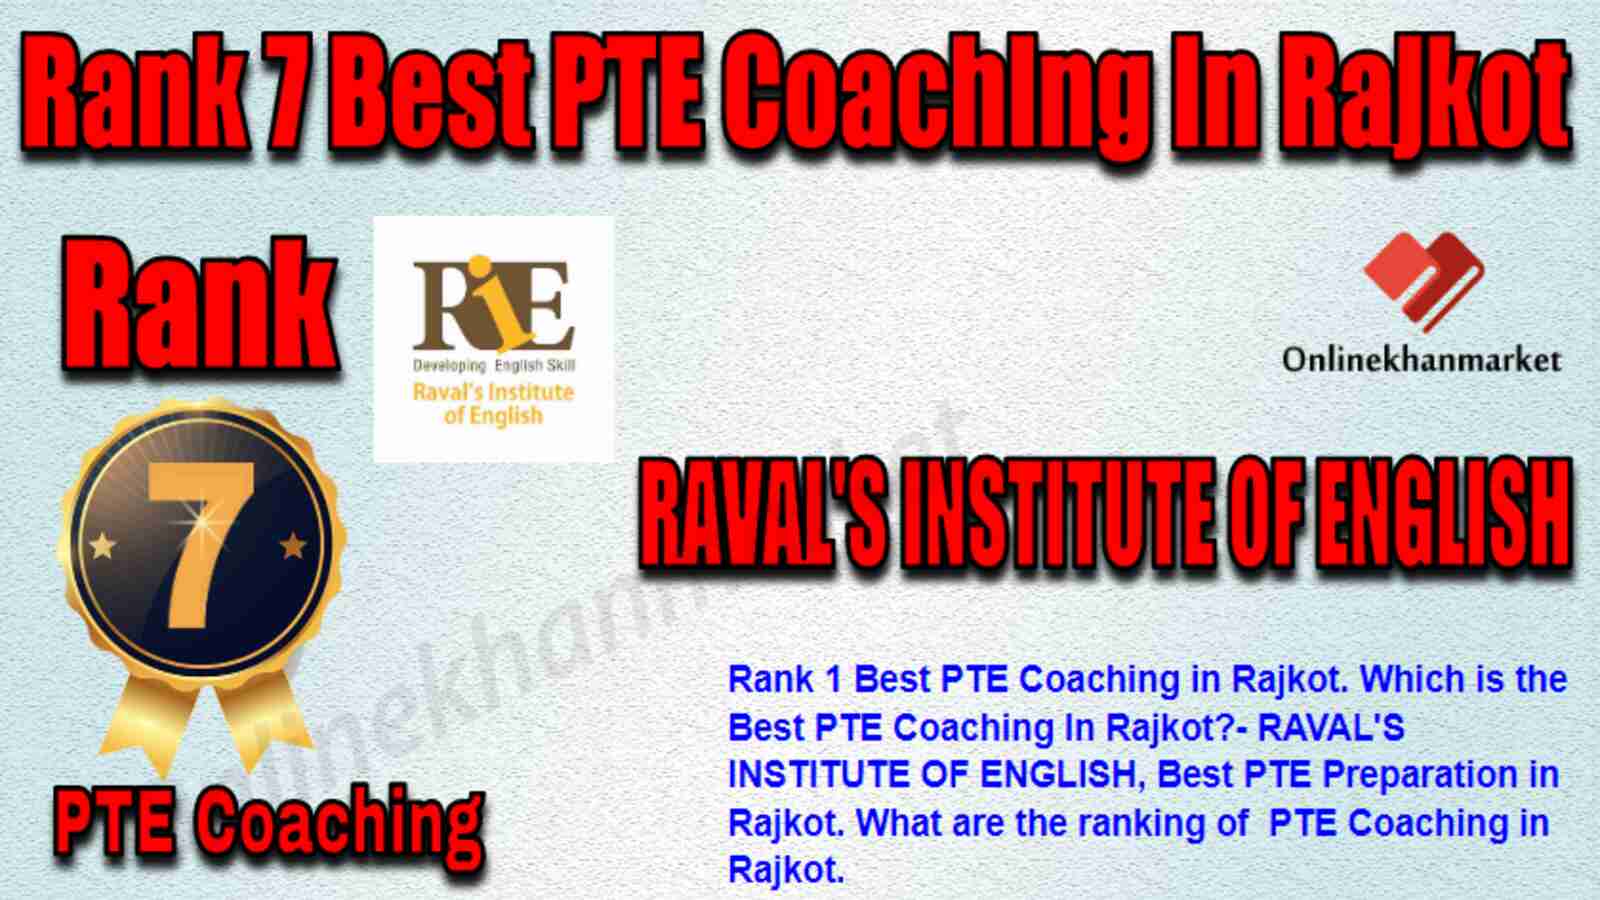 Rank 7 Best PTE Coaching in Rajkot